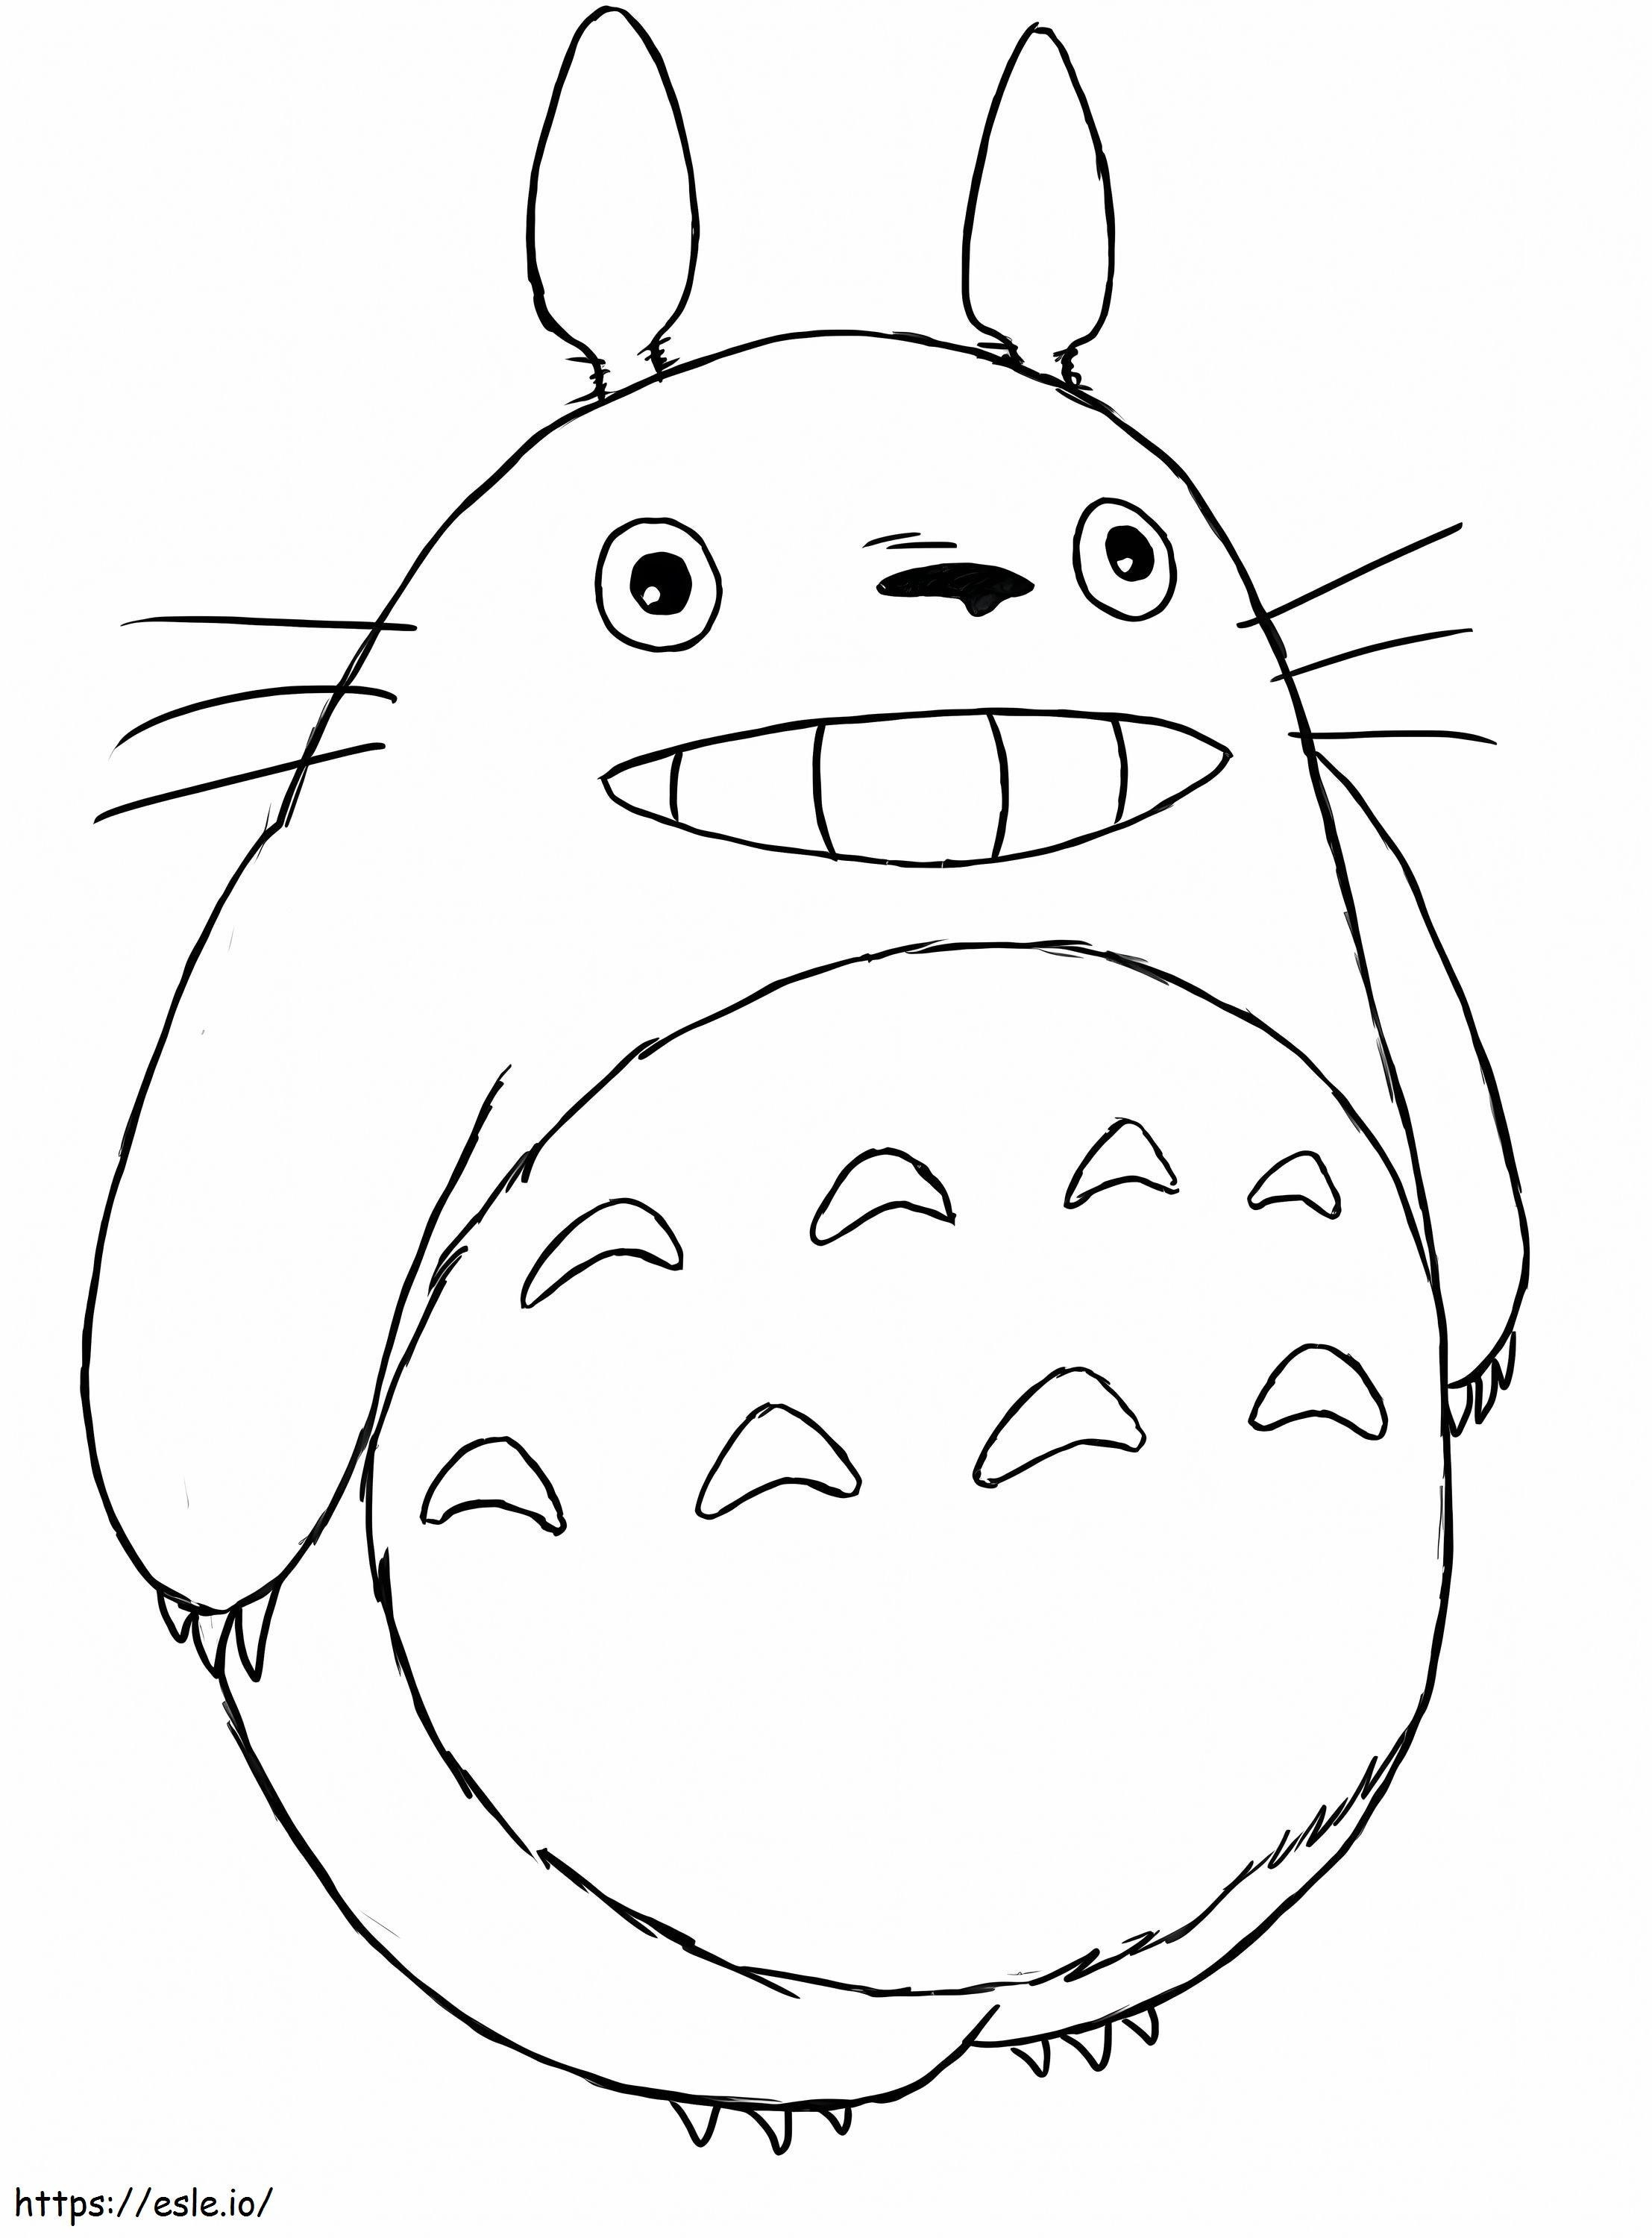 1552895488 760B8288 760B8288 Luxe Totoro Gratis download van Coloriage Totoro kleurplaat kleurplaat